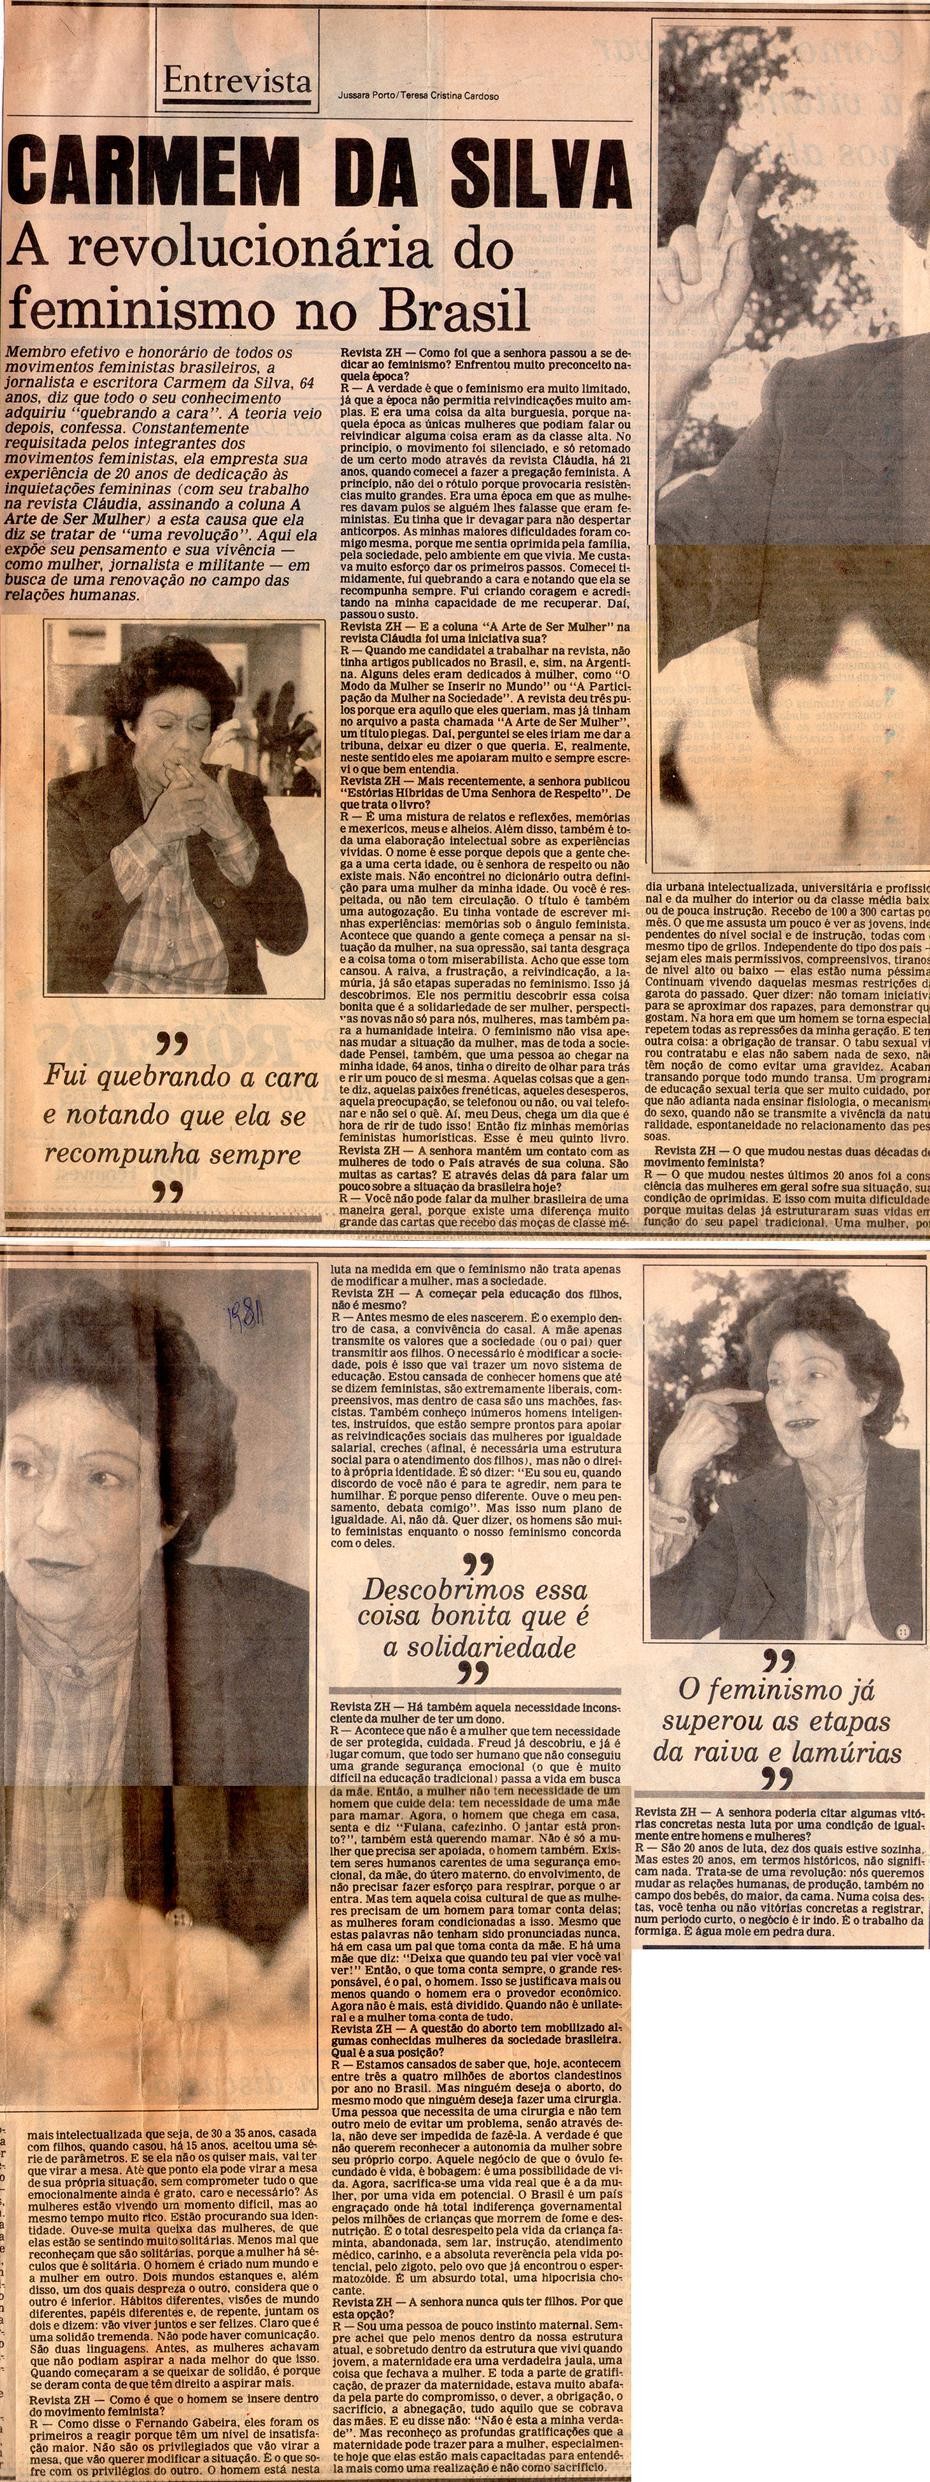 1981 - Zero Hora. Carmem da Silva: A revolucionária do feminismo no Brasil.